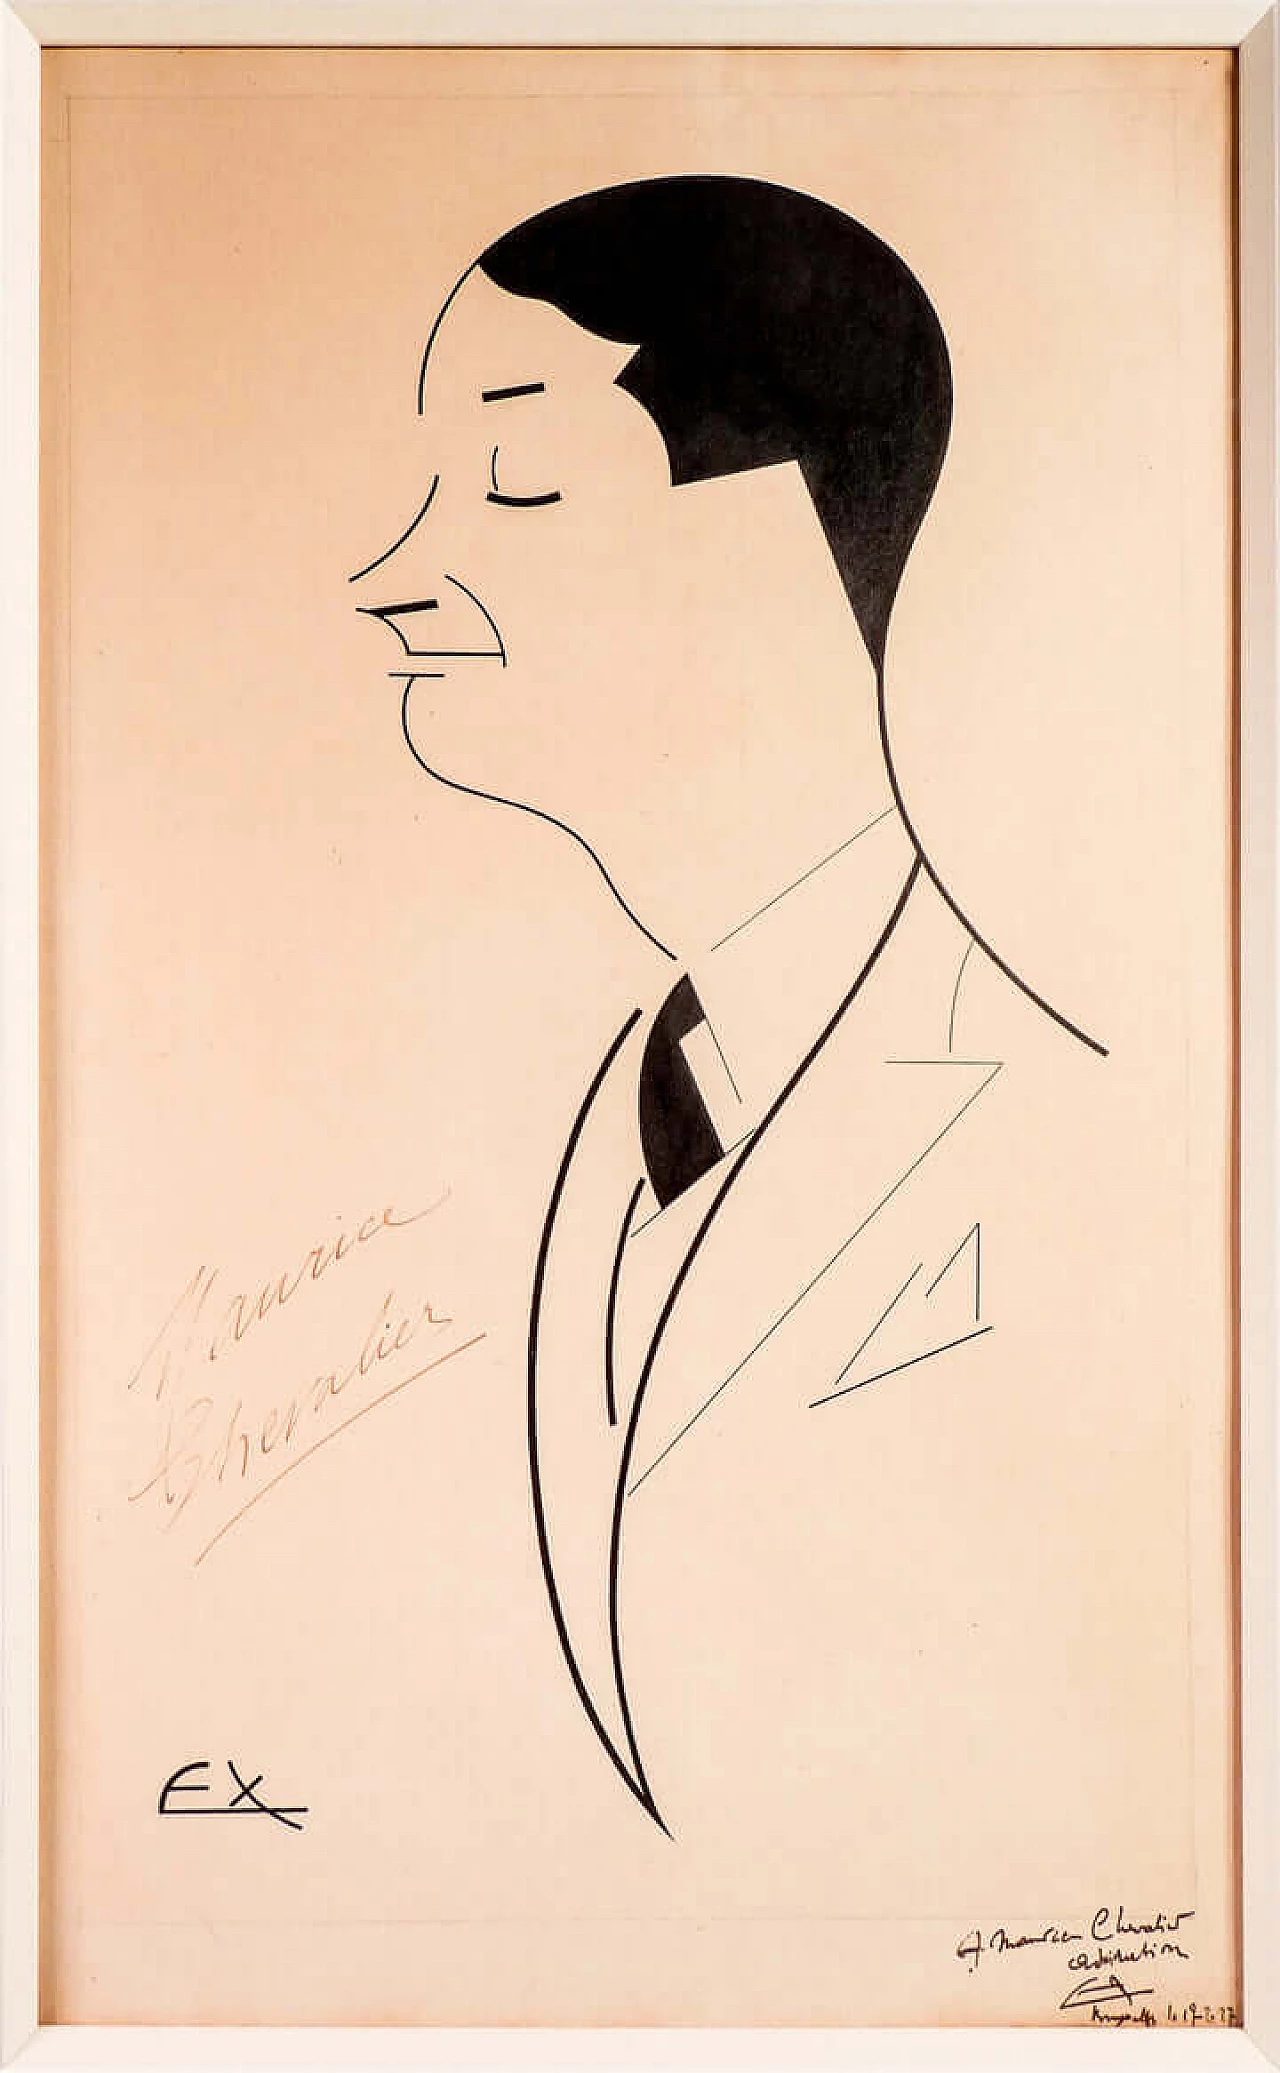 Ex, ritratto di Maurice Chevalier, china su carta, 1927 2